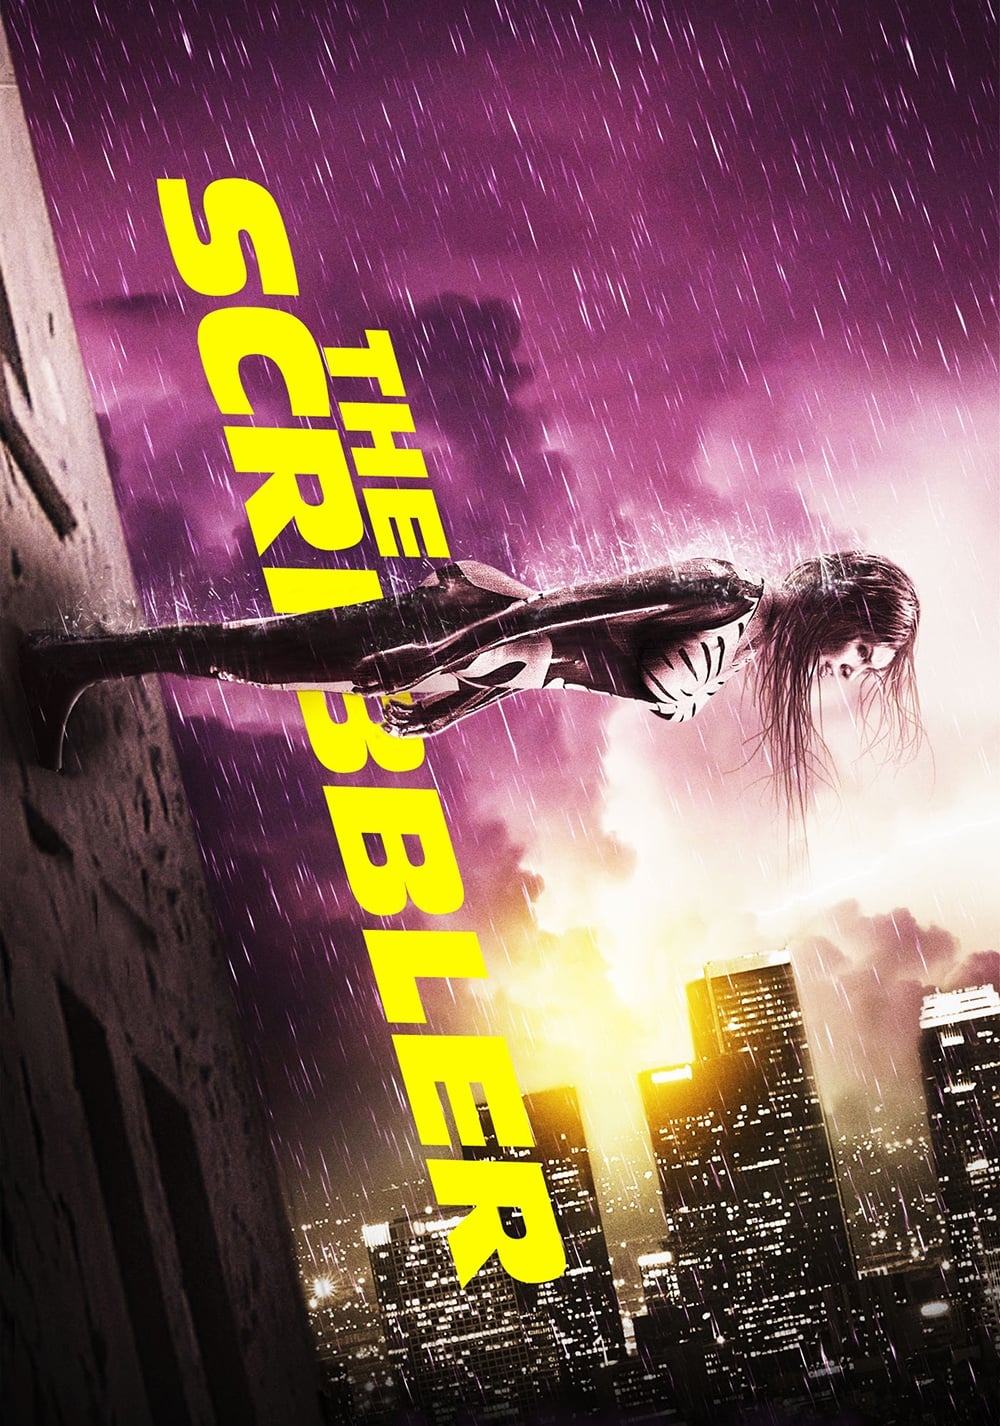 The Scribbler (2014)